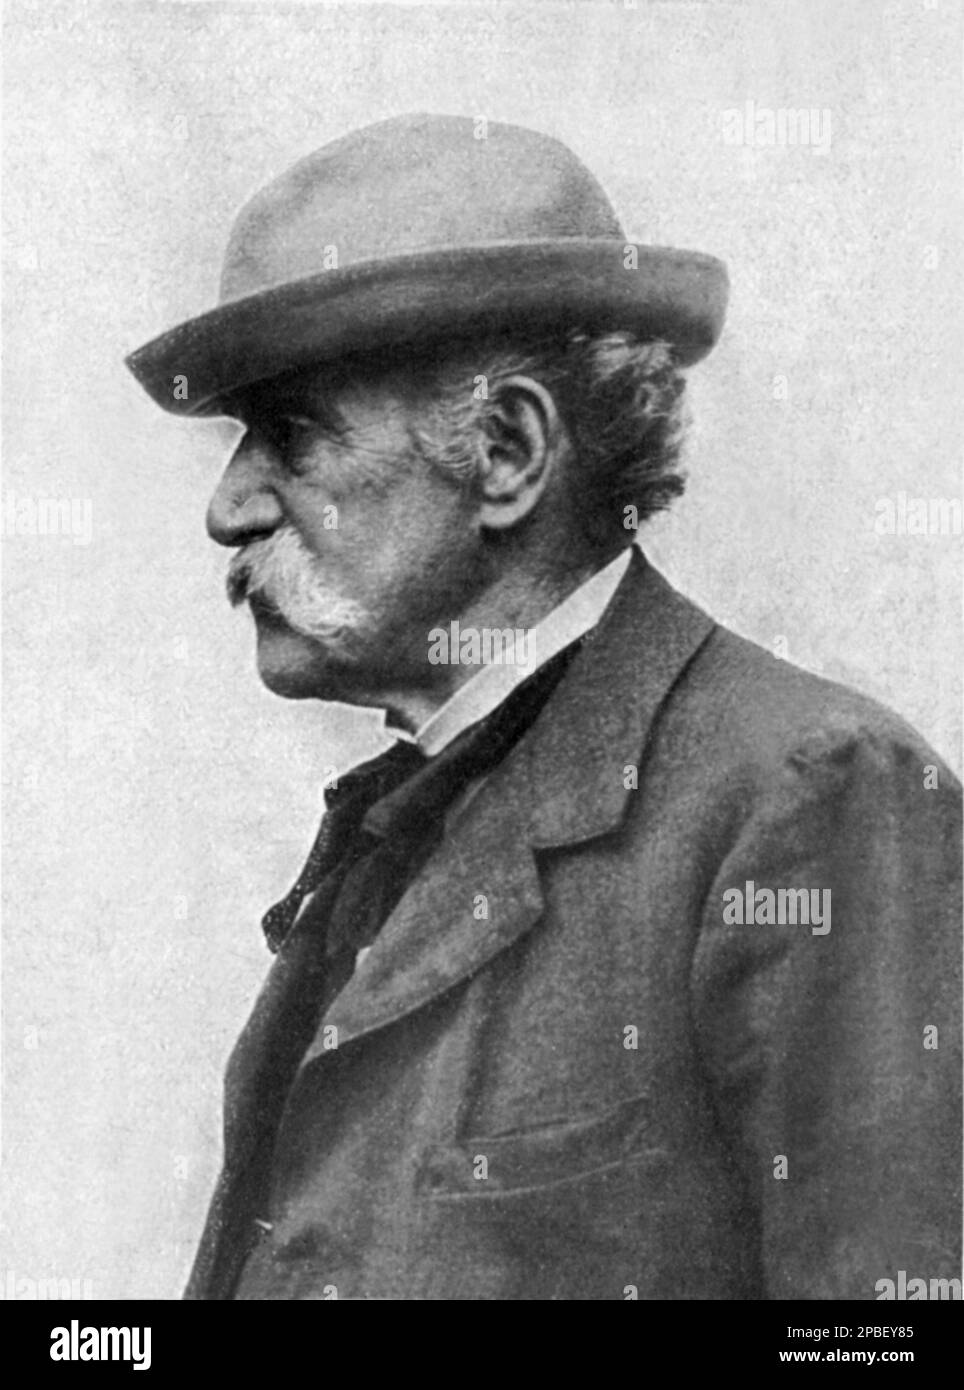 1906 , ITALY  : The  celebrated  italian painter GIOVANNI FATTORI  ( 1825 - 1908 ) , photo by Domenico Trentacoste . One of the leaders of the group known as the Macchiaioli . -  PORTRAIT - RITRATTO  - ARTE -  ARTS - foto storiche - history  - PITTORE macchiaiolo - divisionismo - hat - cappello - baffi - moustache - profile - profilo   ----  Archivio GBB Stock Photo